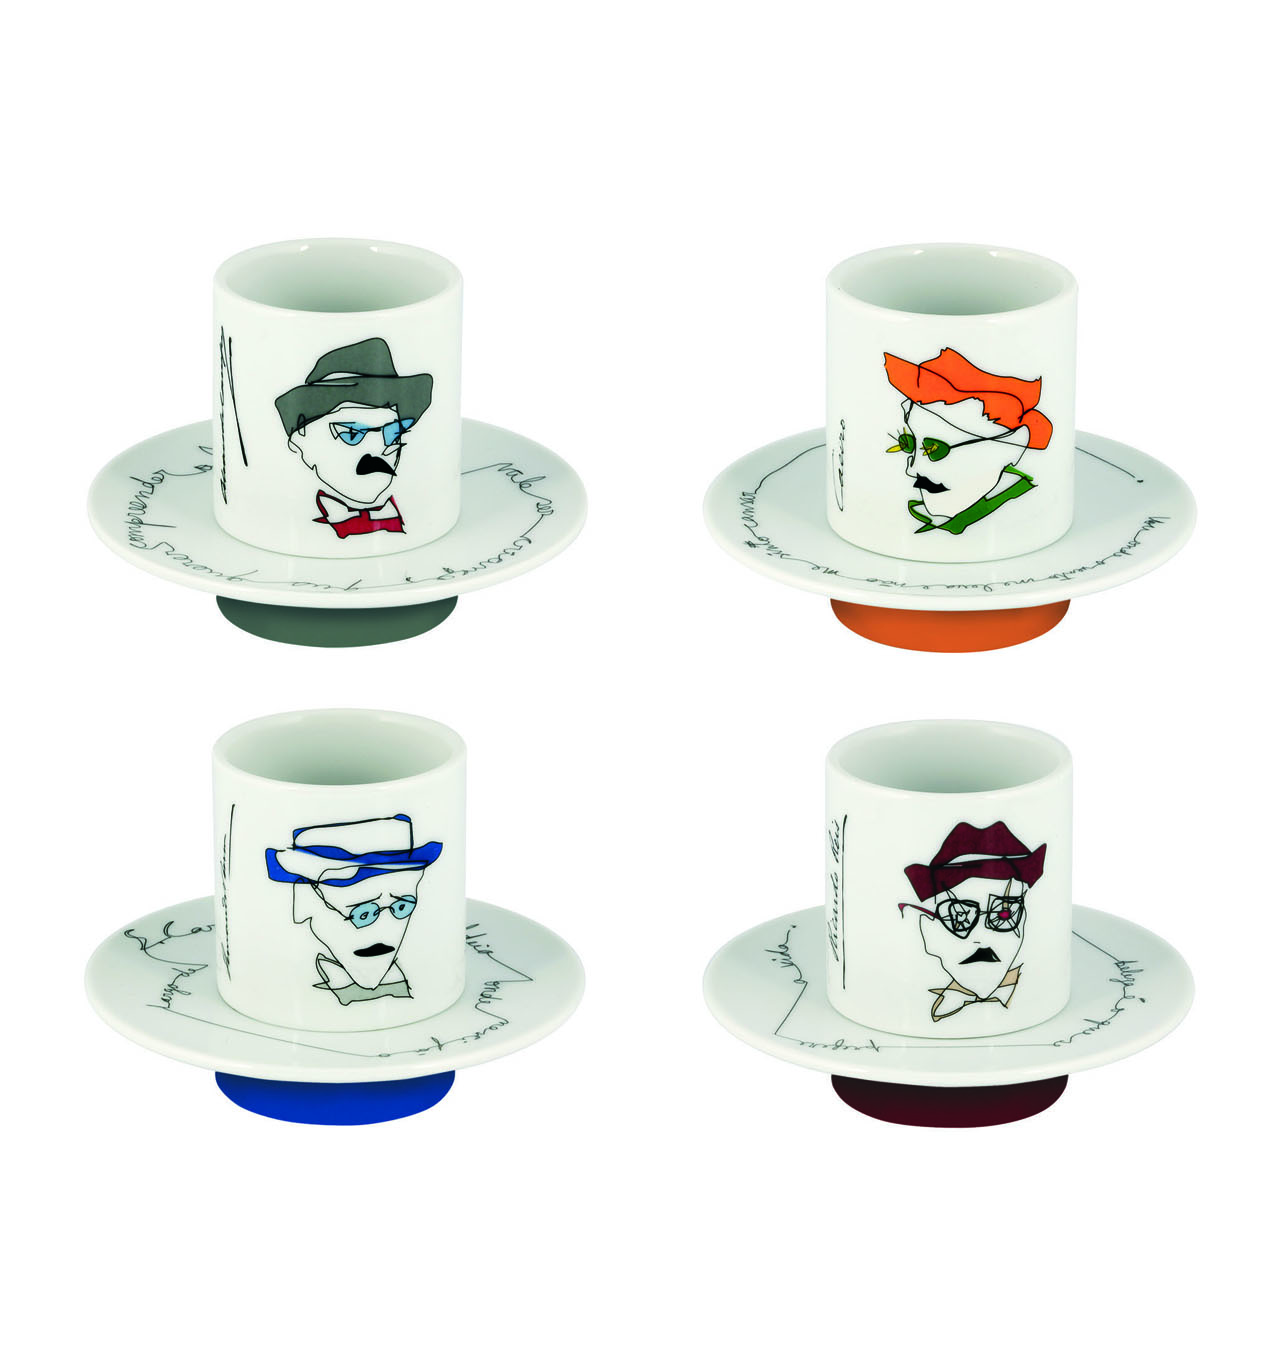 Vista Alegre Collection Heteronimos set 4 coffee cups and saucers